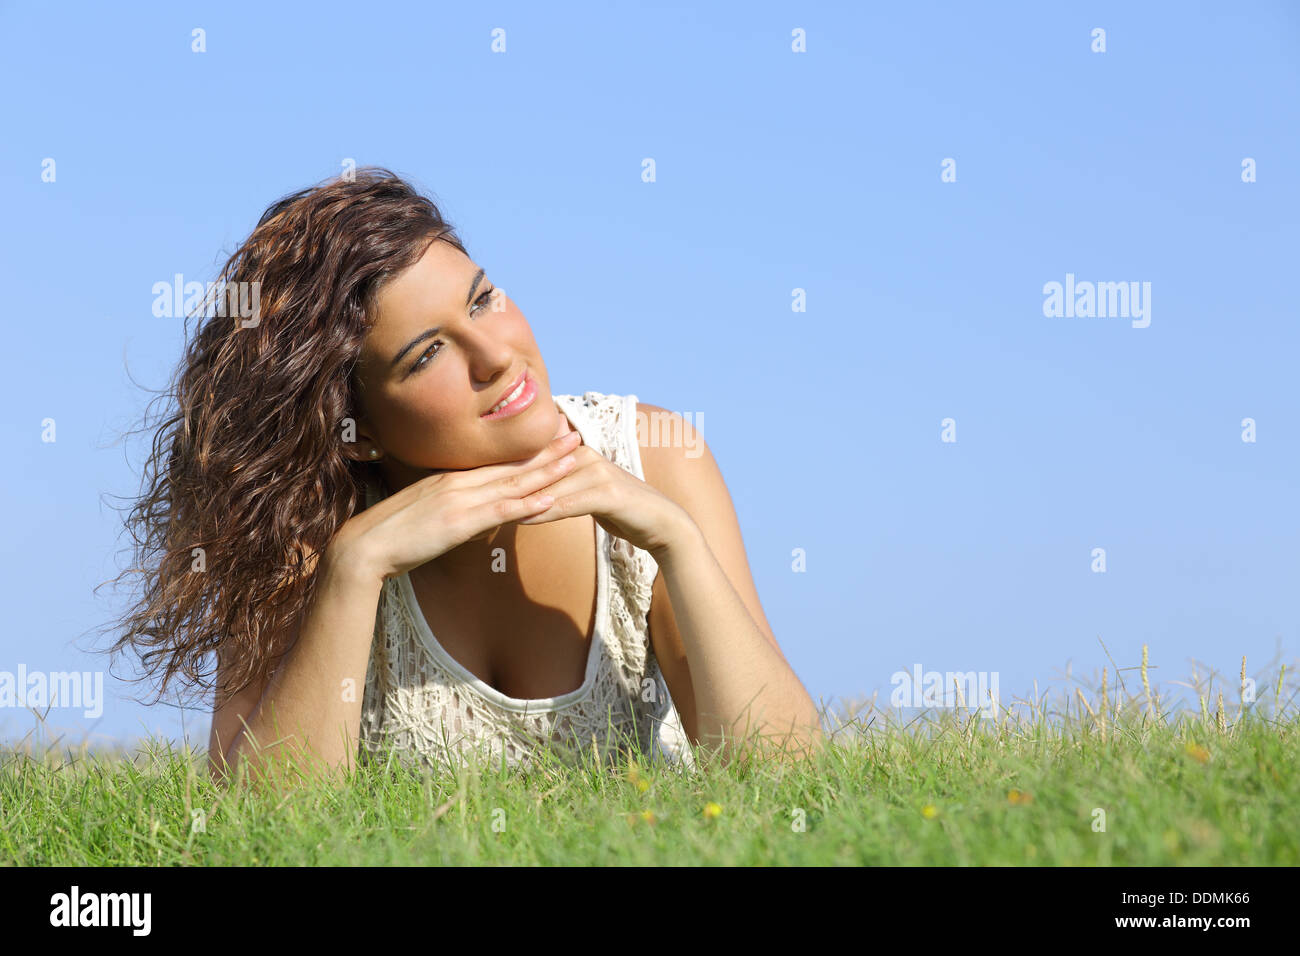 Ritratto di una donna bellissima sdraiati sull'erba con un cielo blu in background Foto Stock